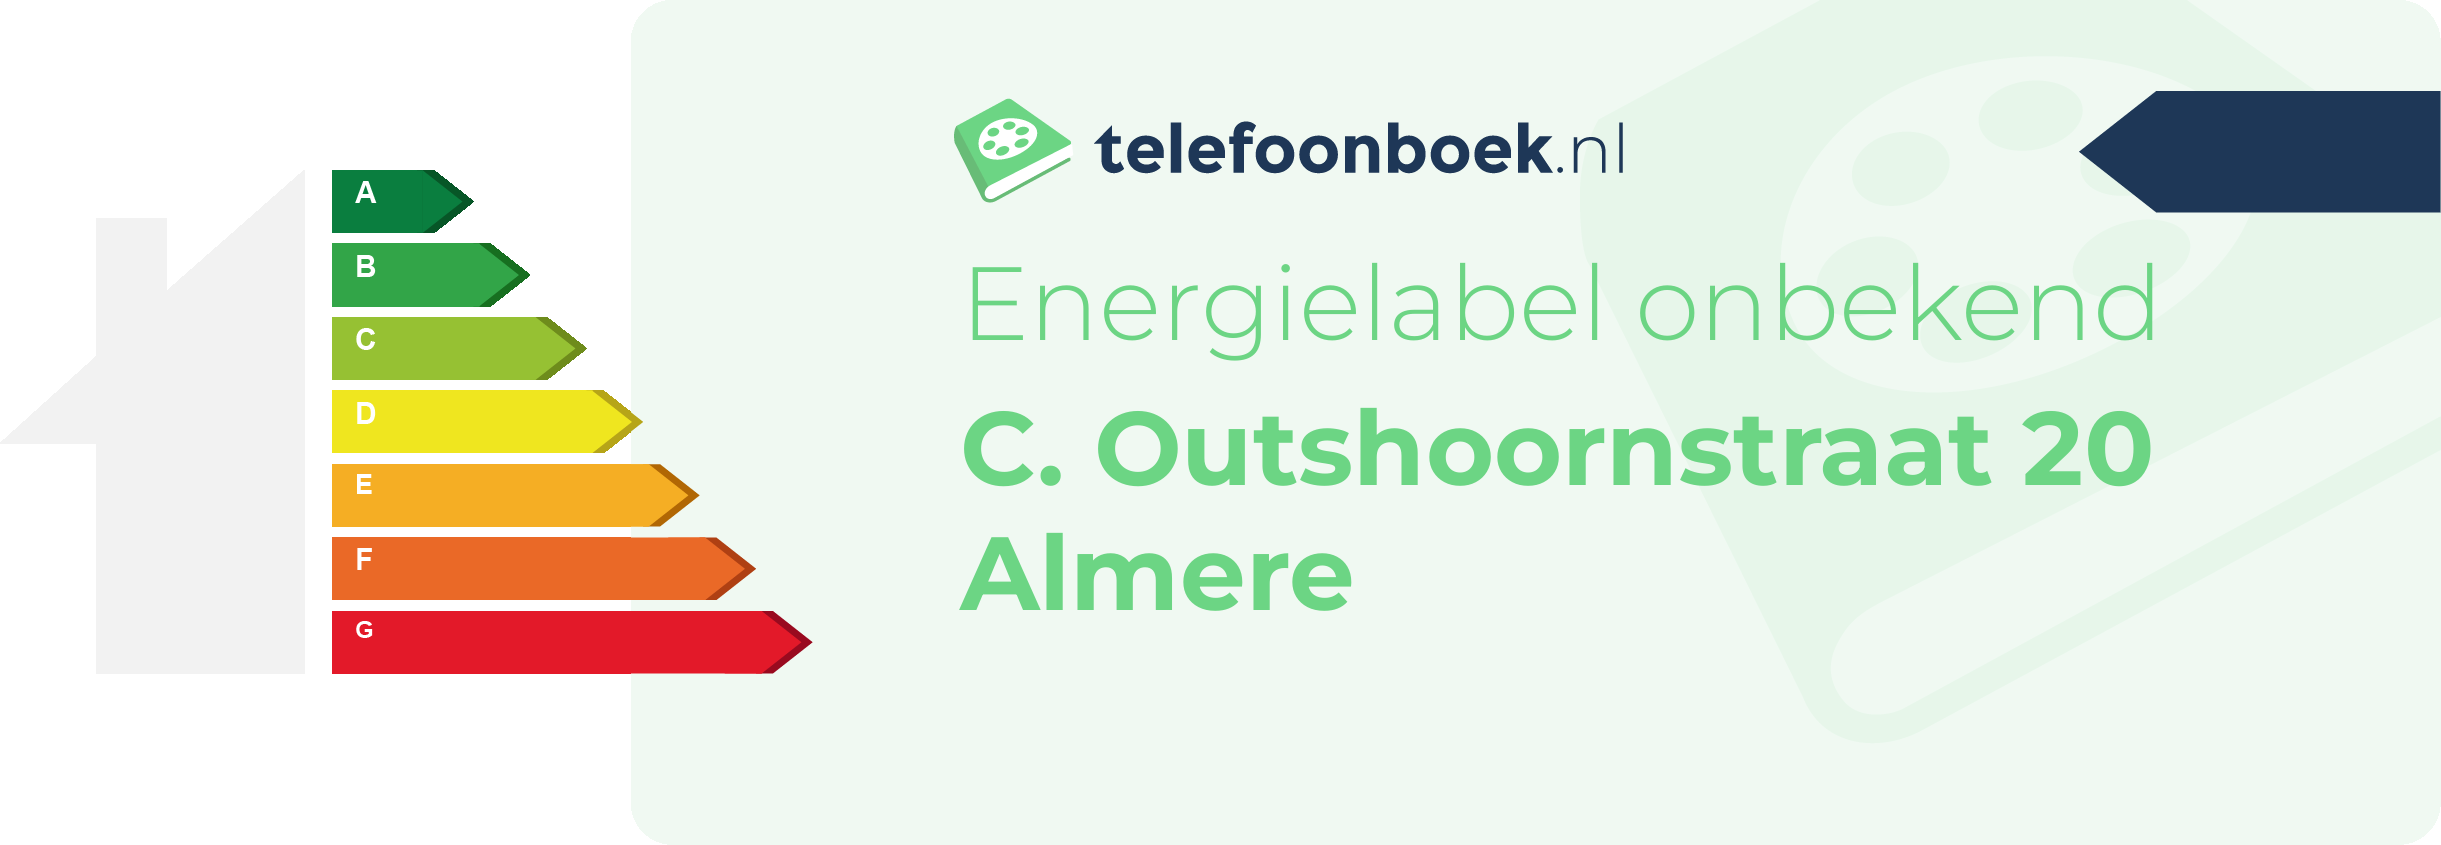 Energielabel C. Outshoornstraat 20 Almere